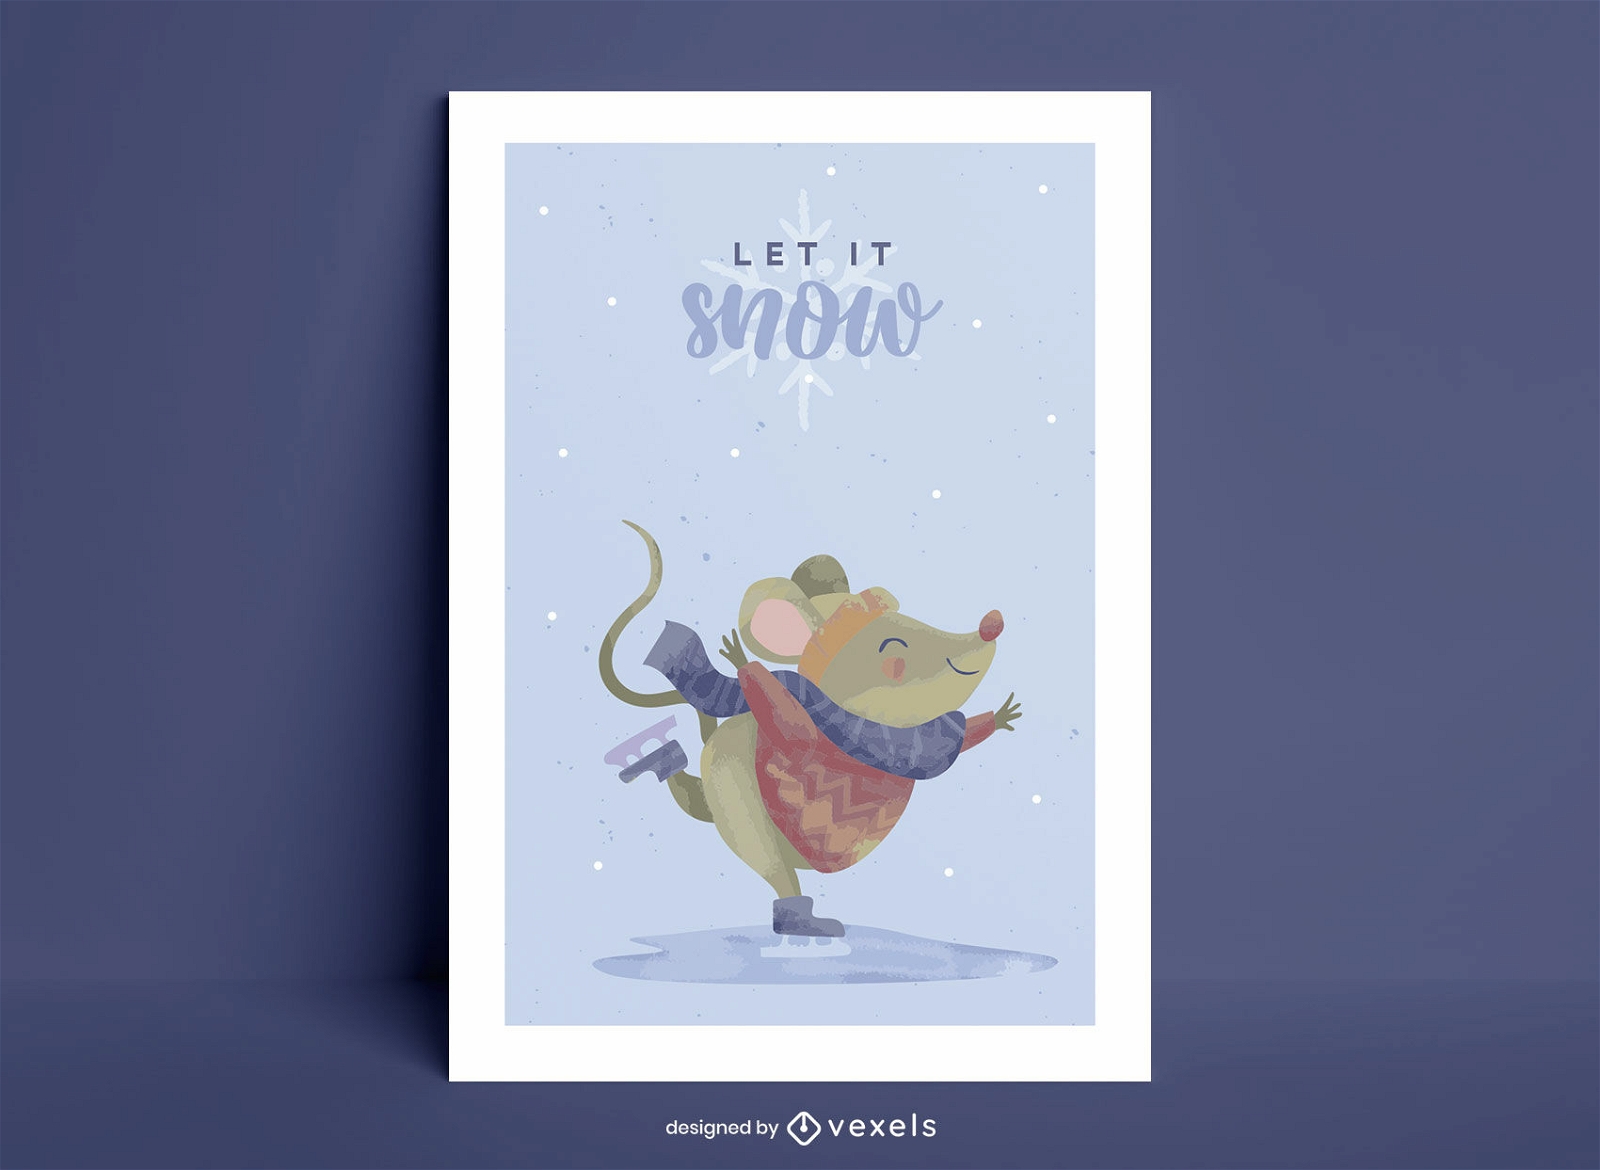 Let it snow mouse design de cartaz de citação